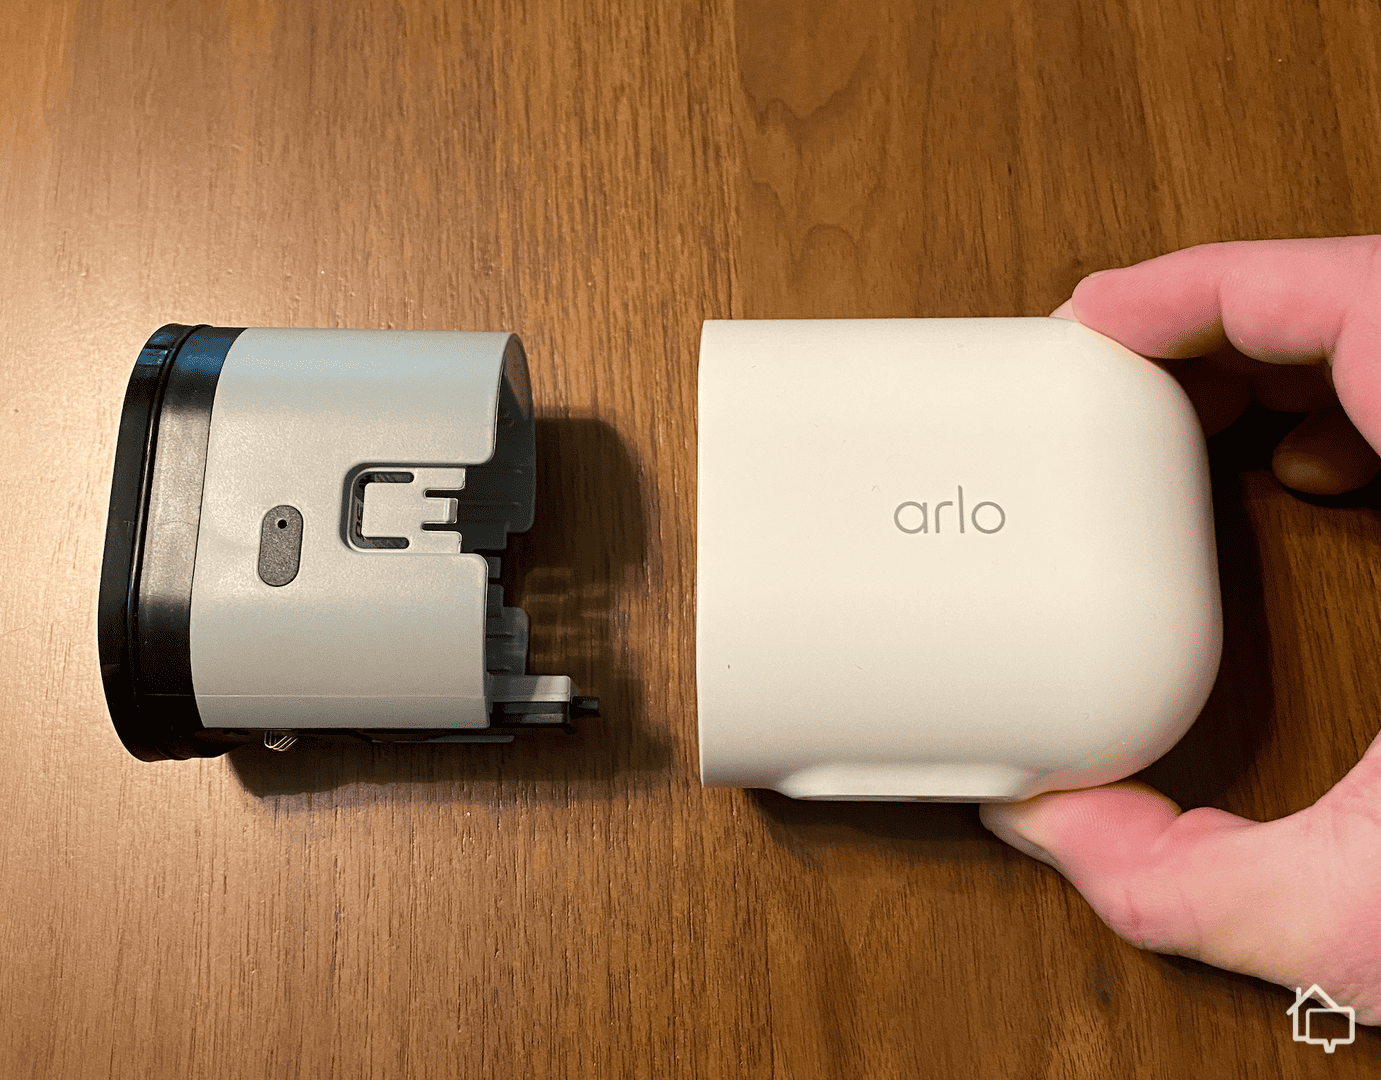 Netgear Arlo Pro review: Netgear's Arlo Pro cam brings smart